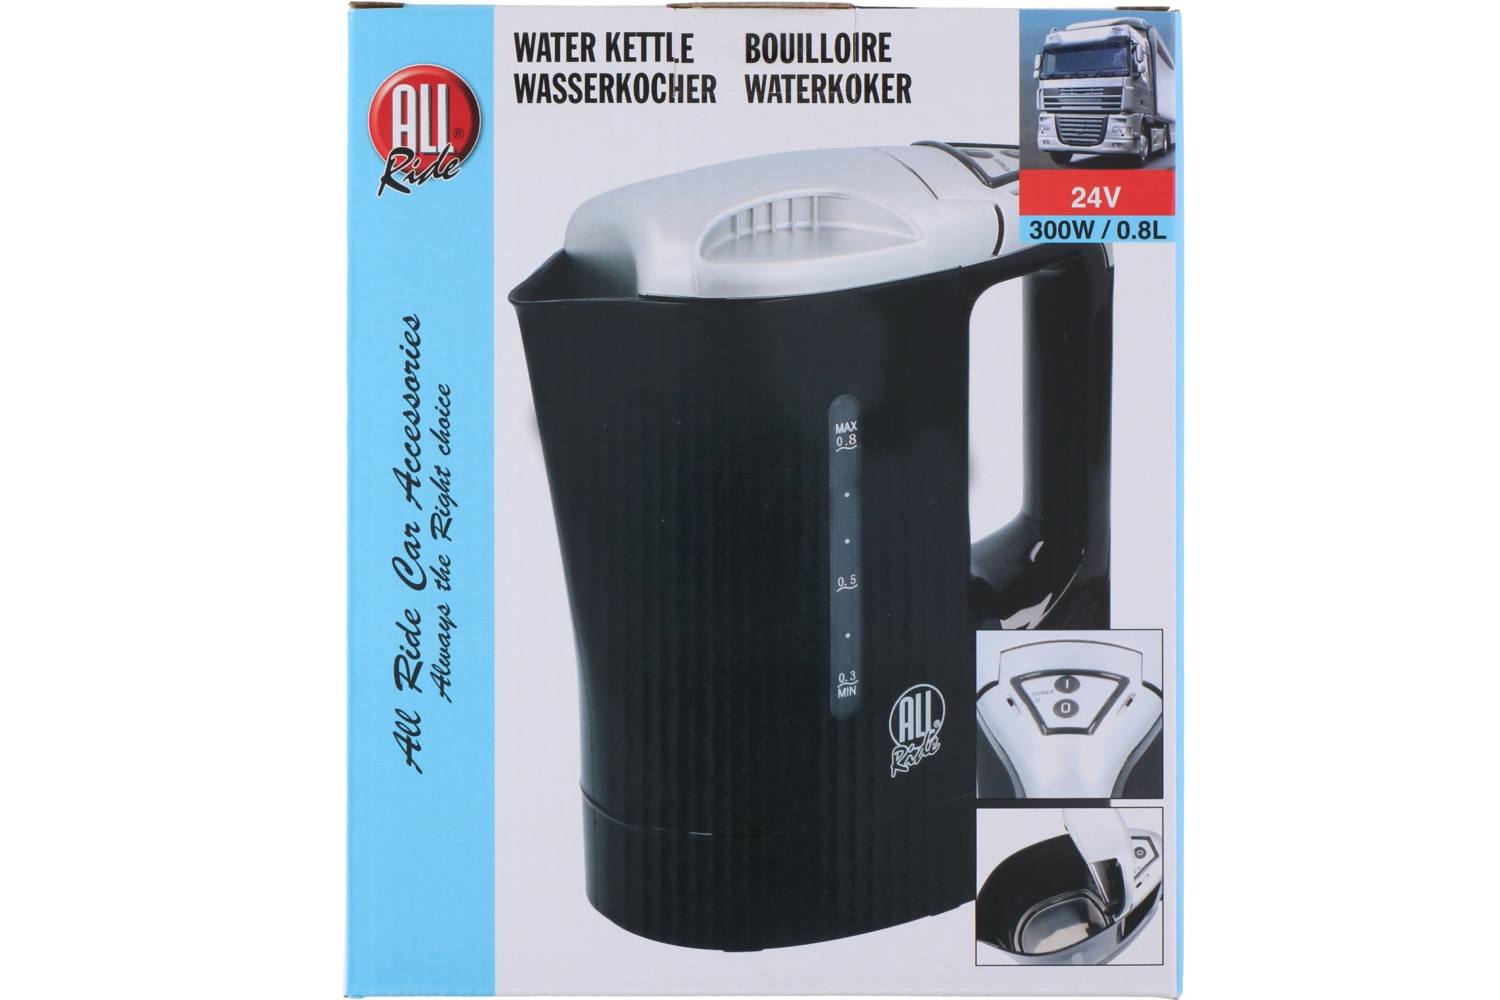 Water kettle, AllRide, 24V, 300W, 800ml 2